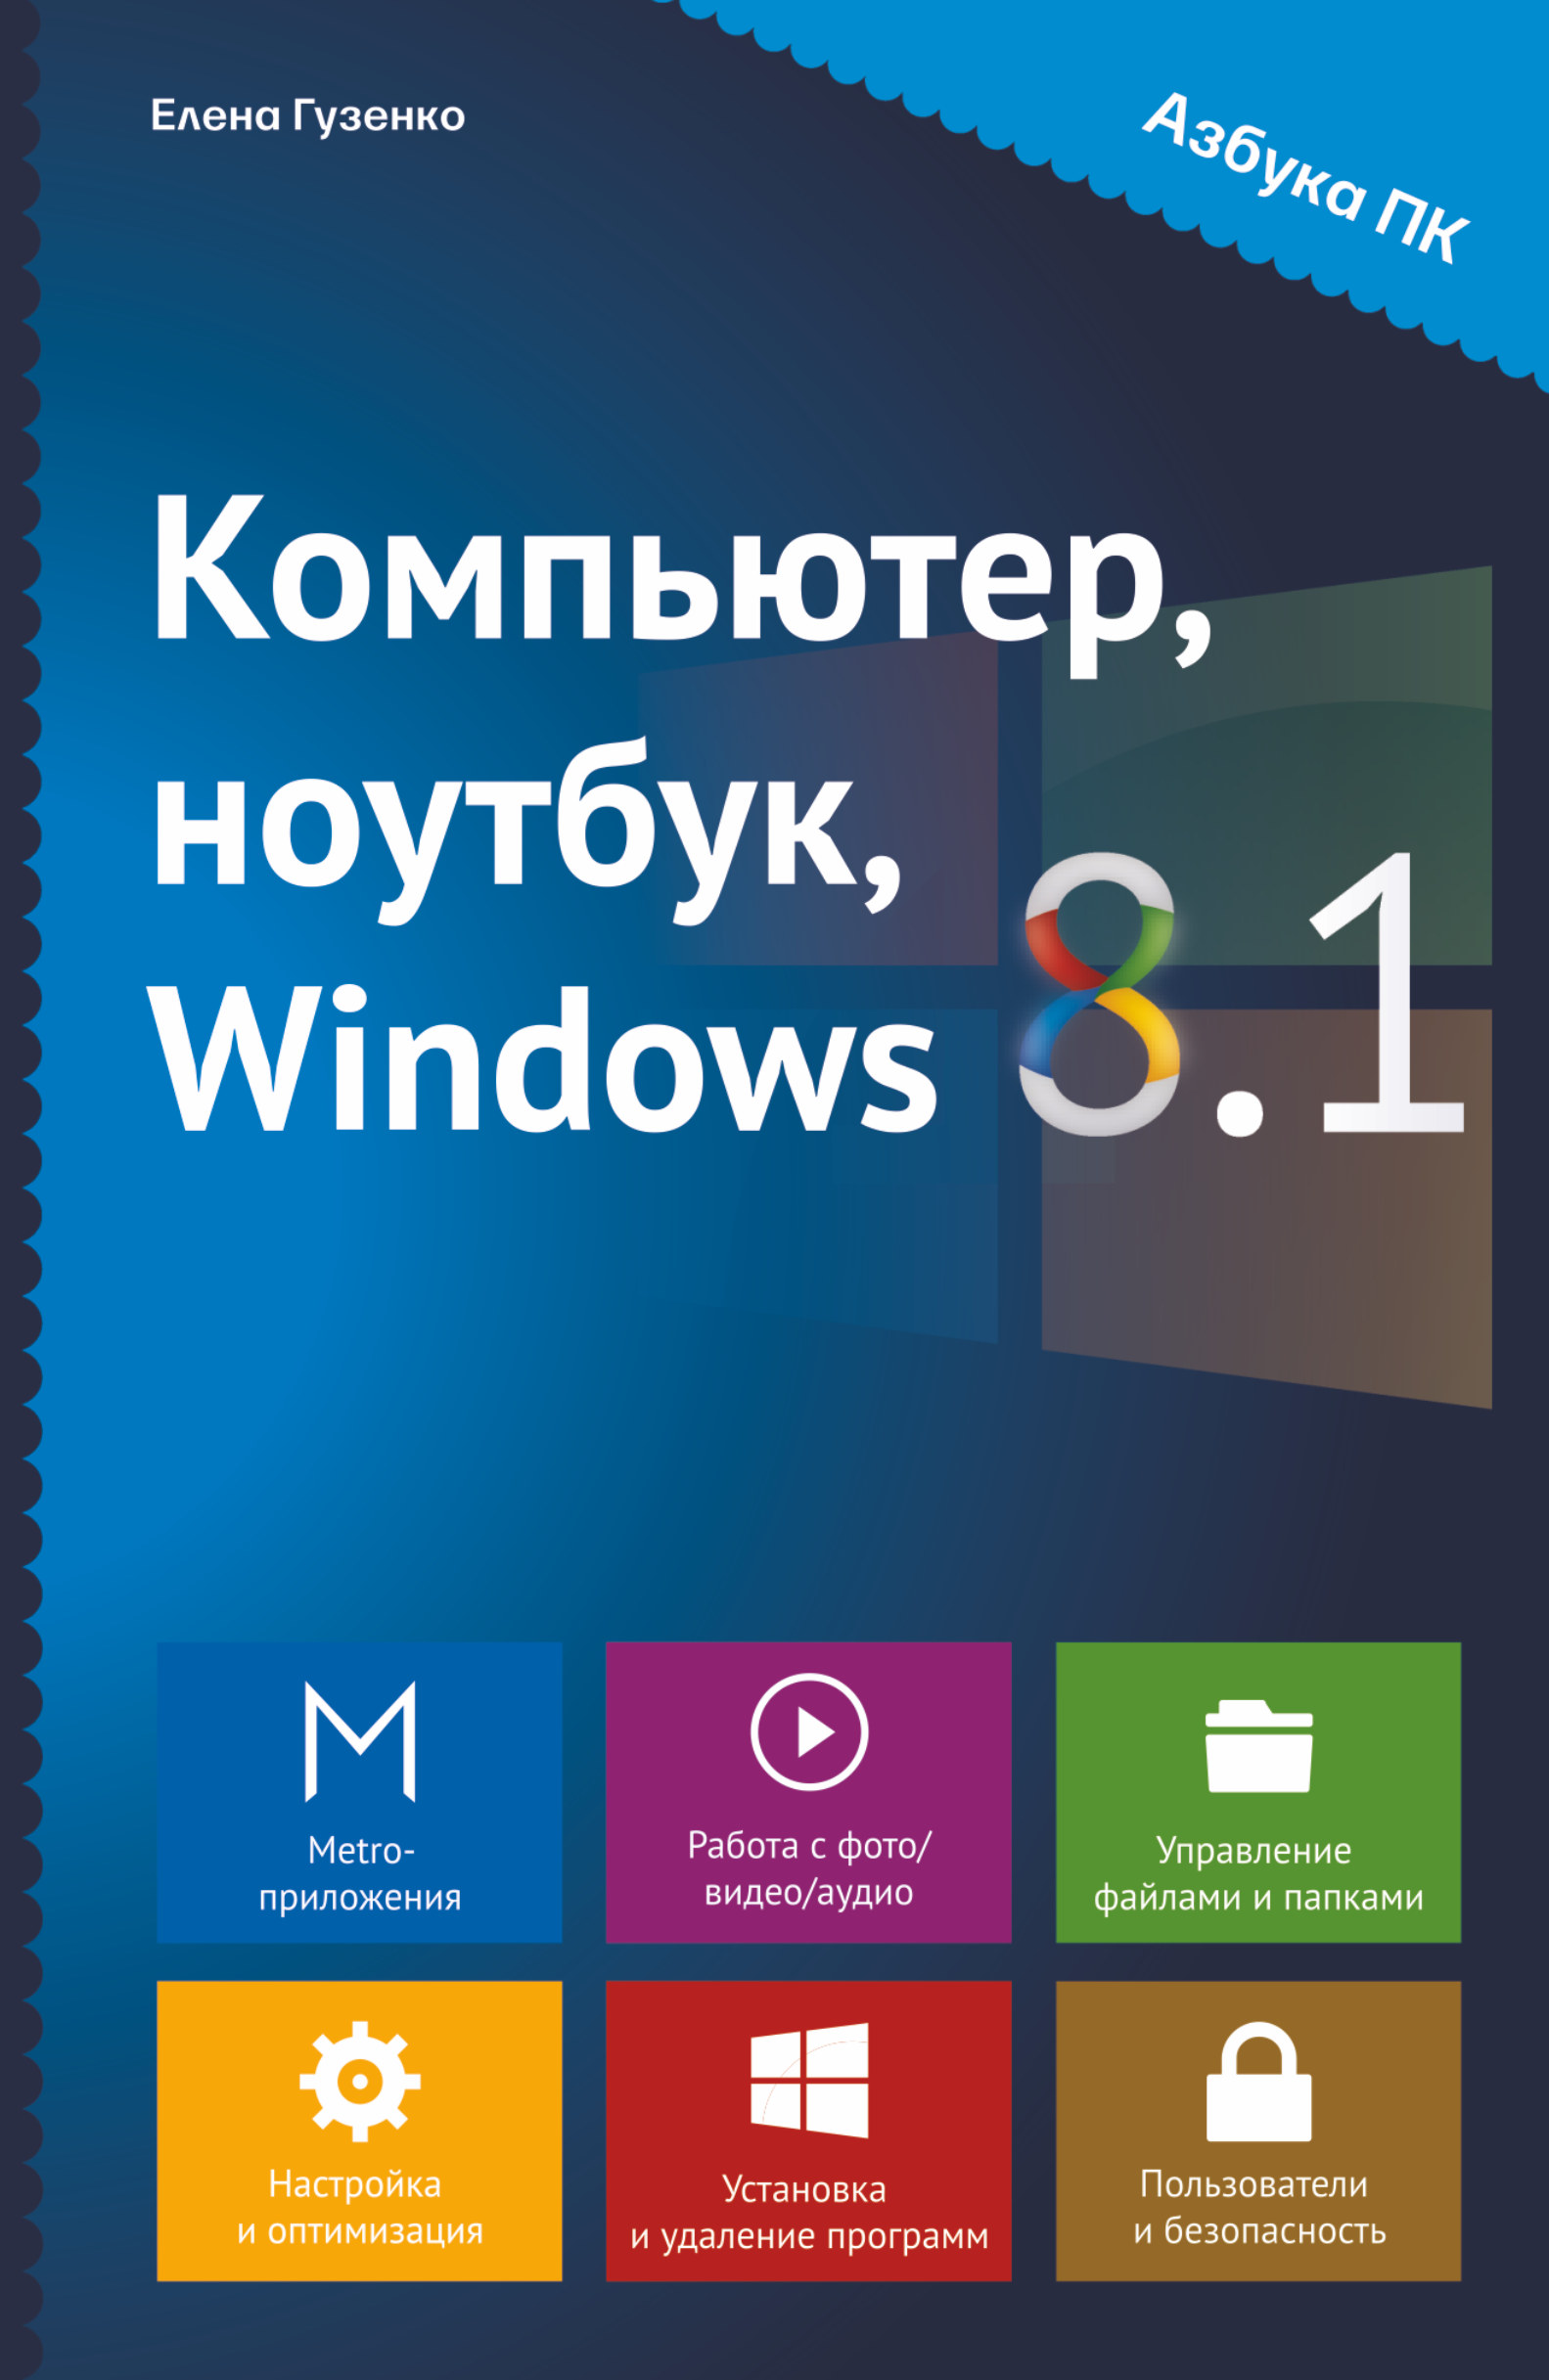 , , Windows 8.1